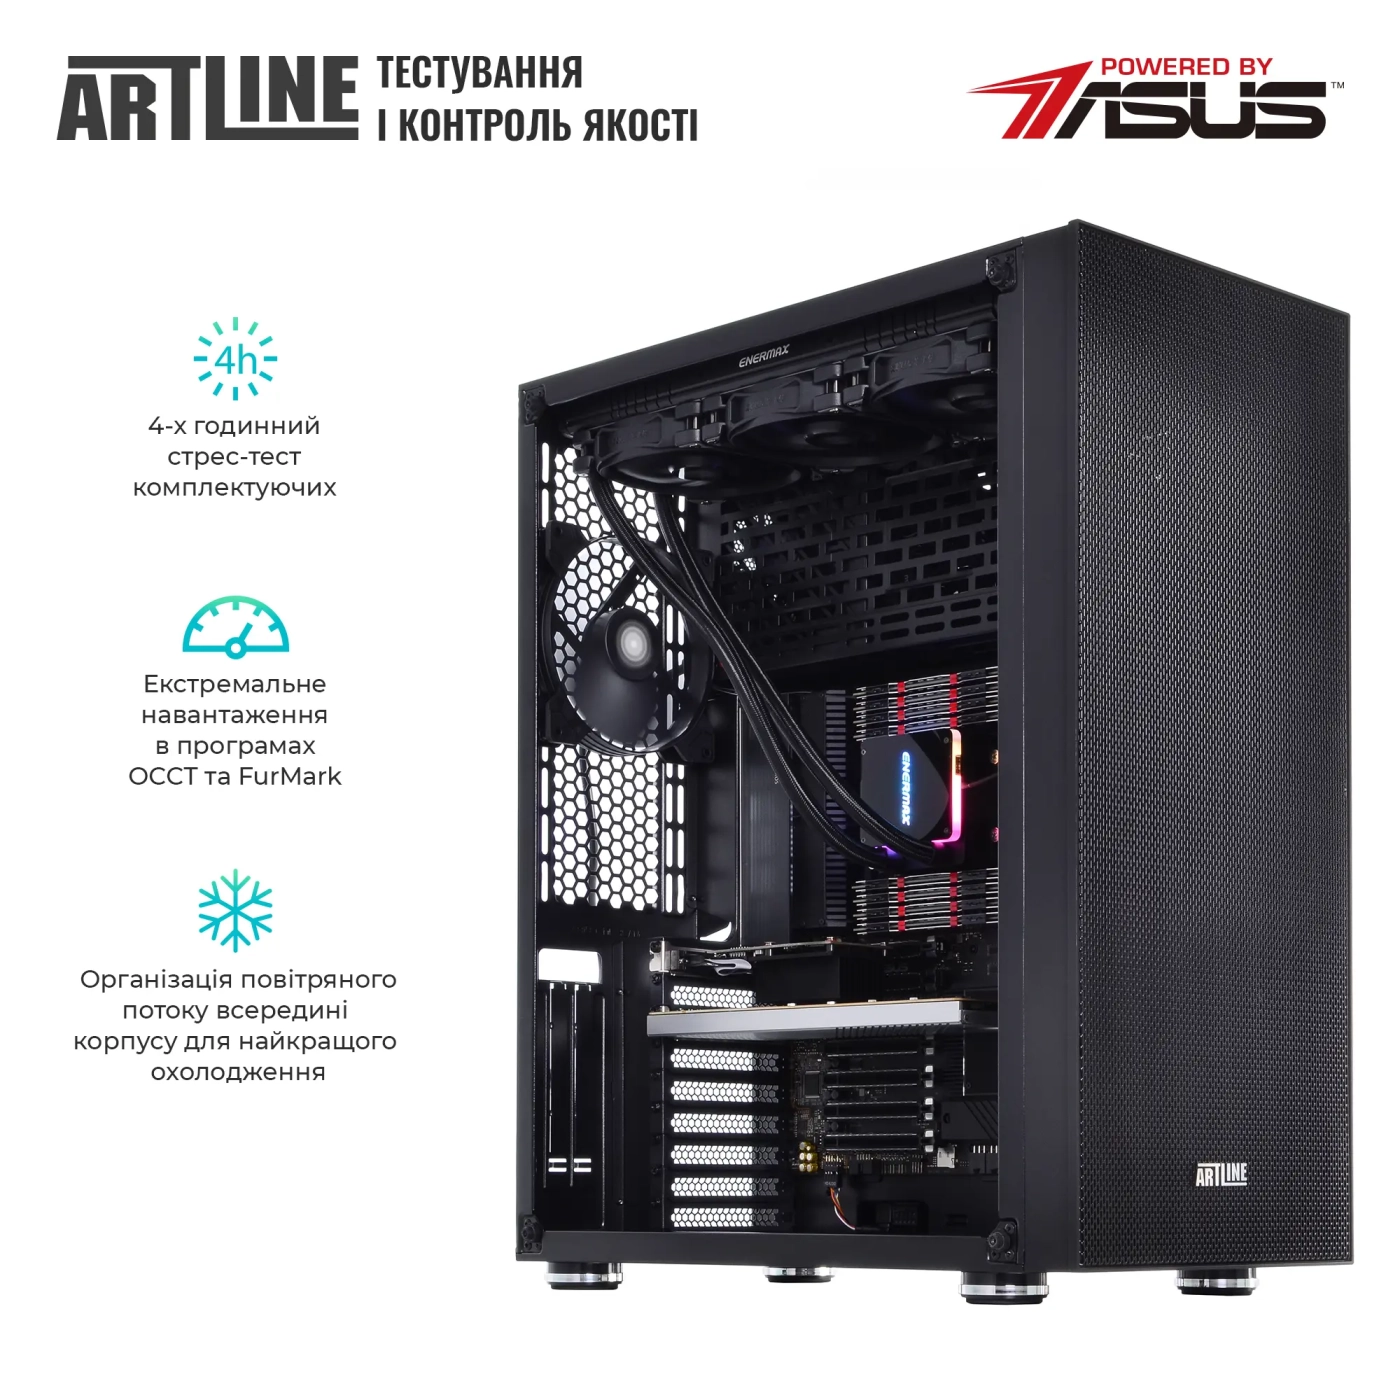 Купить Сервер ARTLINE Business T85v05Win - фото 7